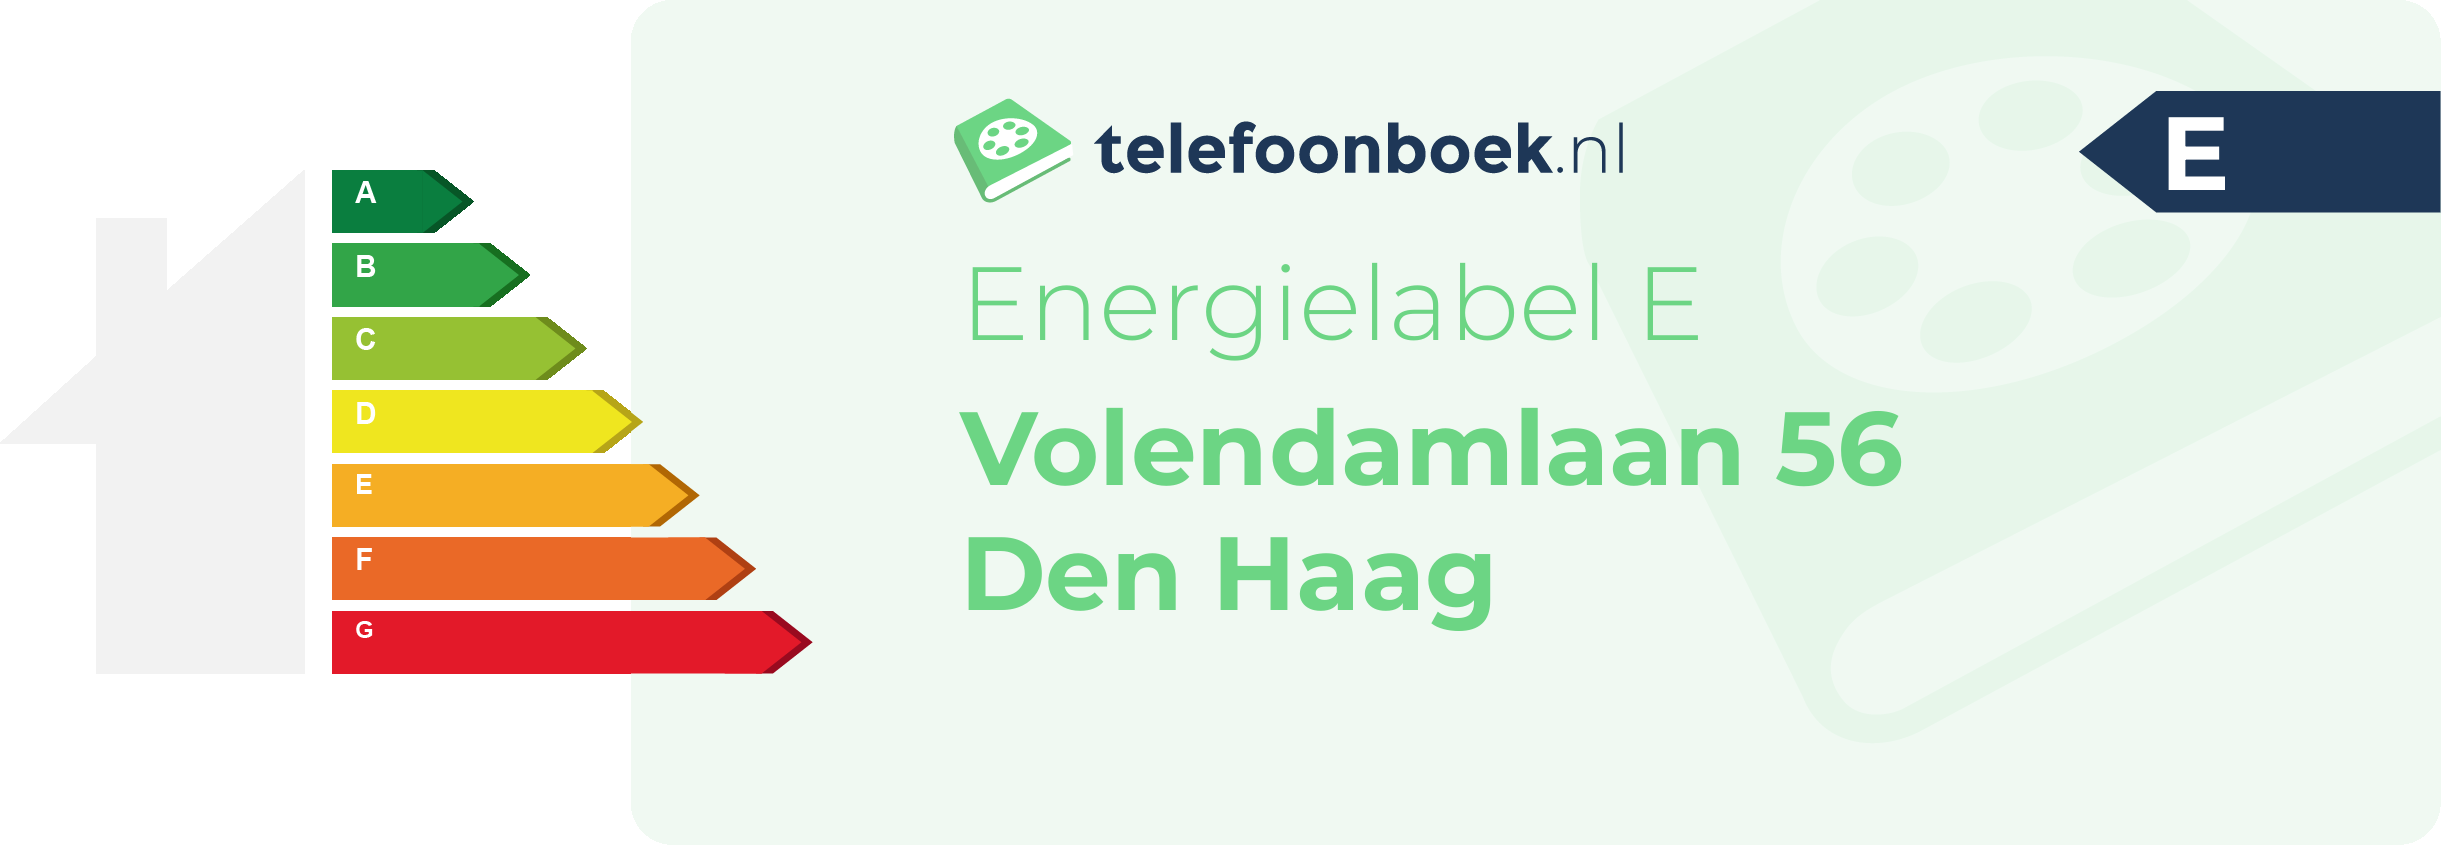 Energielabel Volendamlaan 56 Den Haag